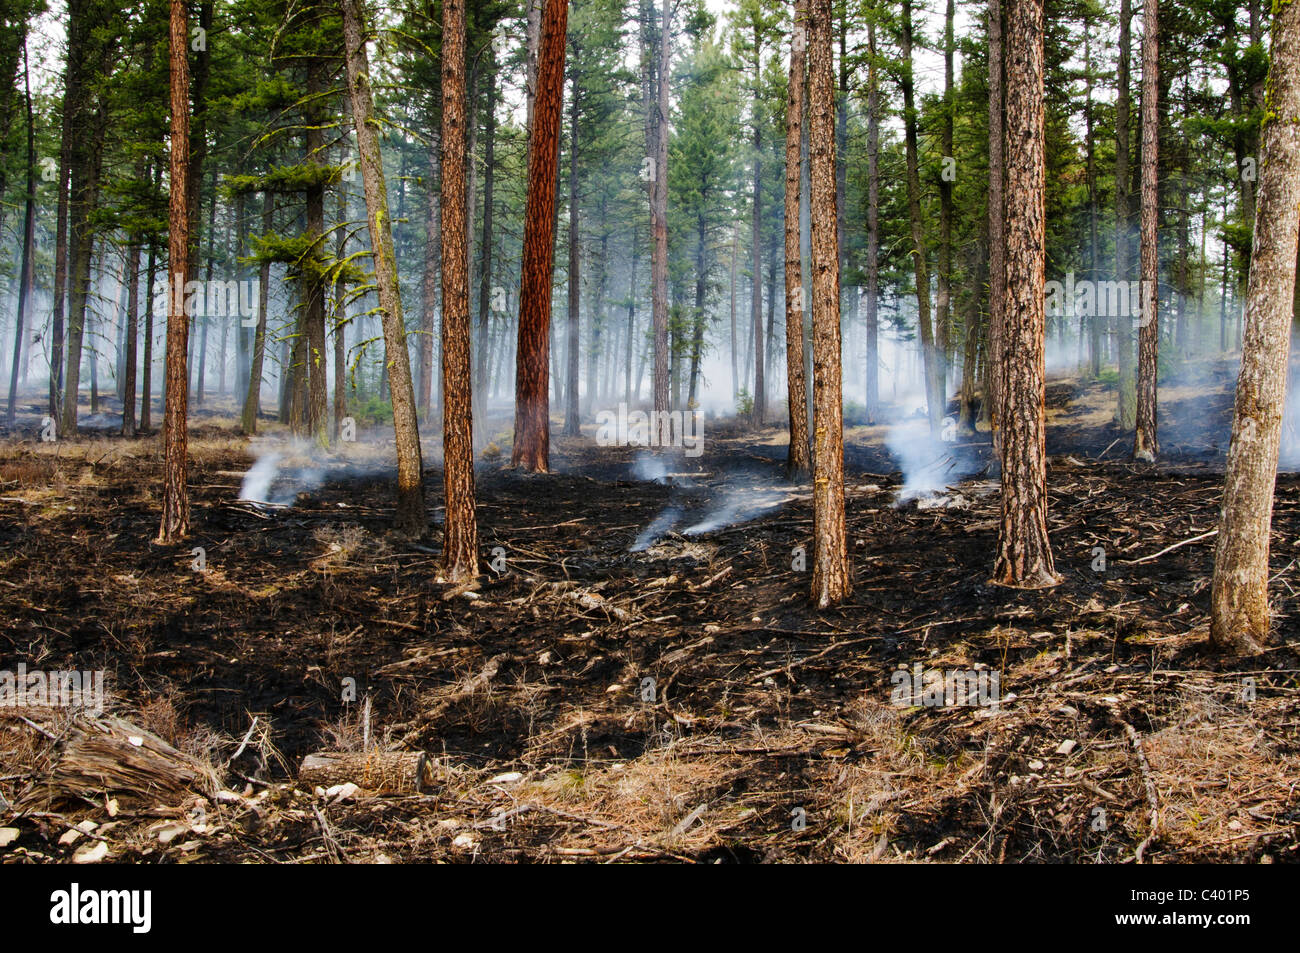 Un brûlage contrôlé dans la région du canyon de Pattee Missoula Montana a été utilisé pour enlever l'herbe séchée dans les forêts. Banque D'Images